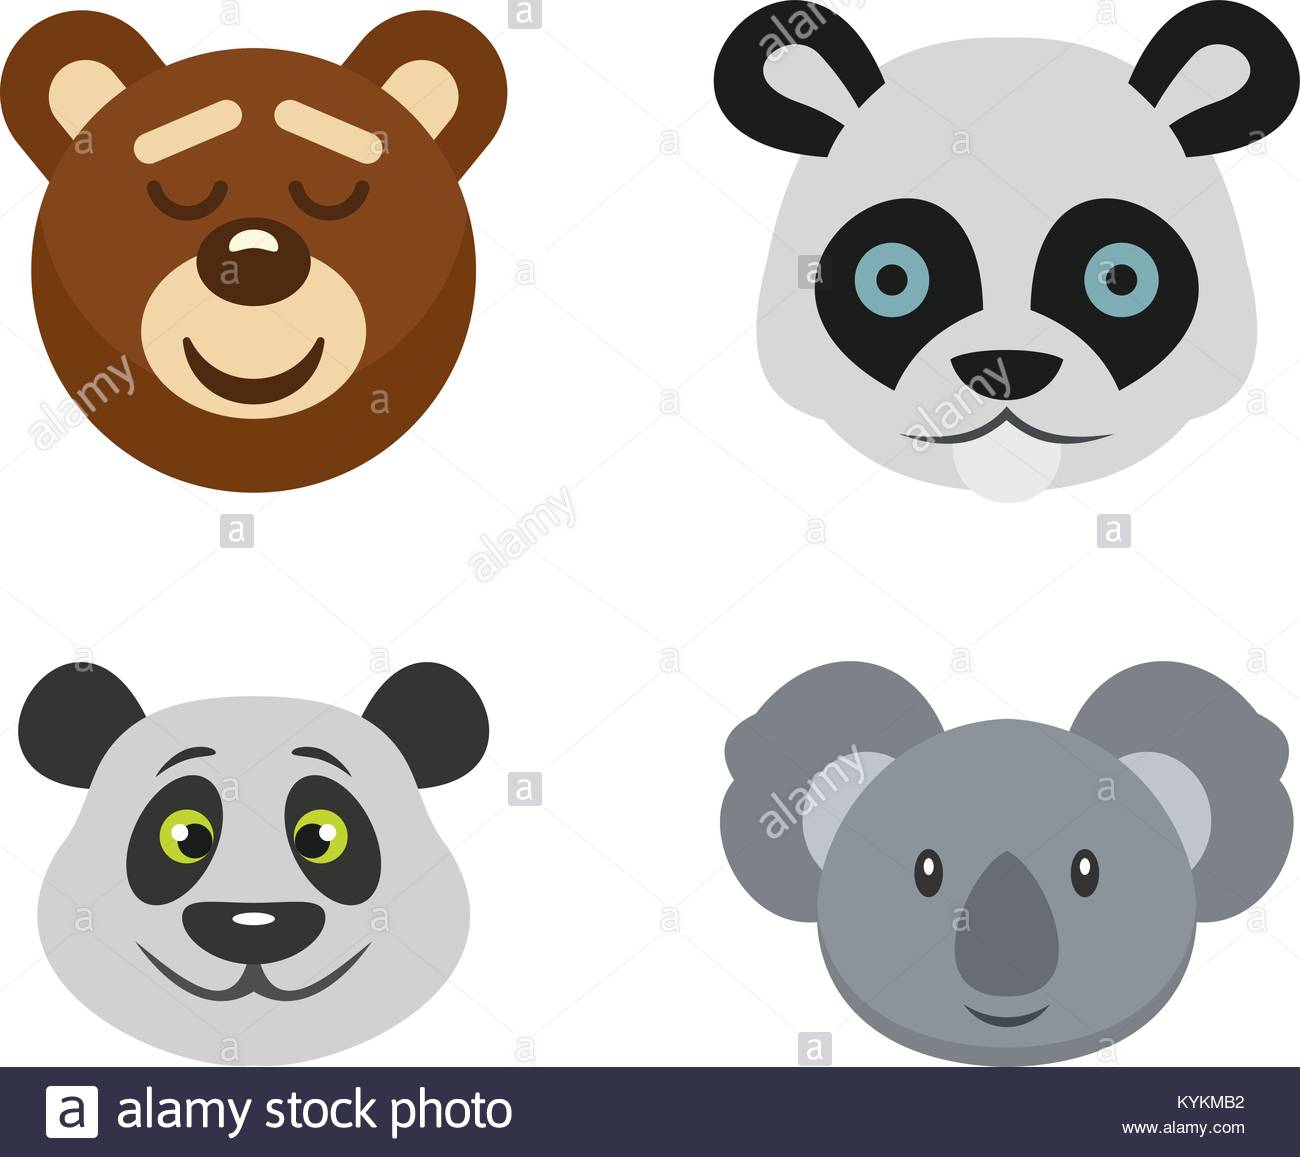 Bear, bear market, business, finance, head, investment, stock 